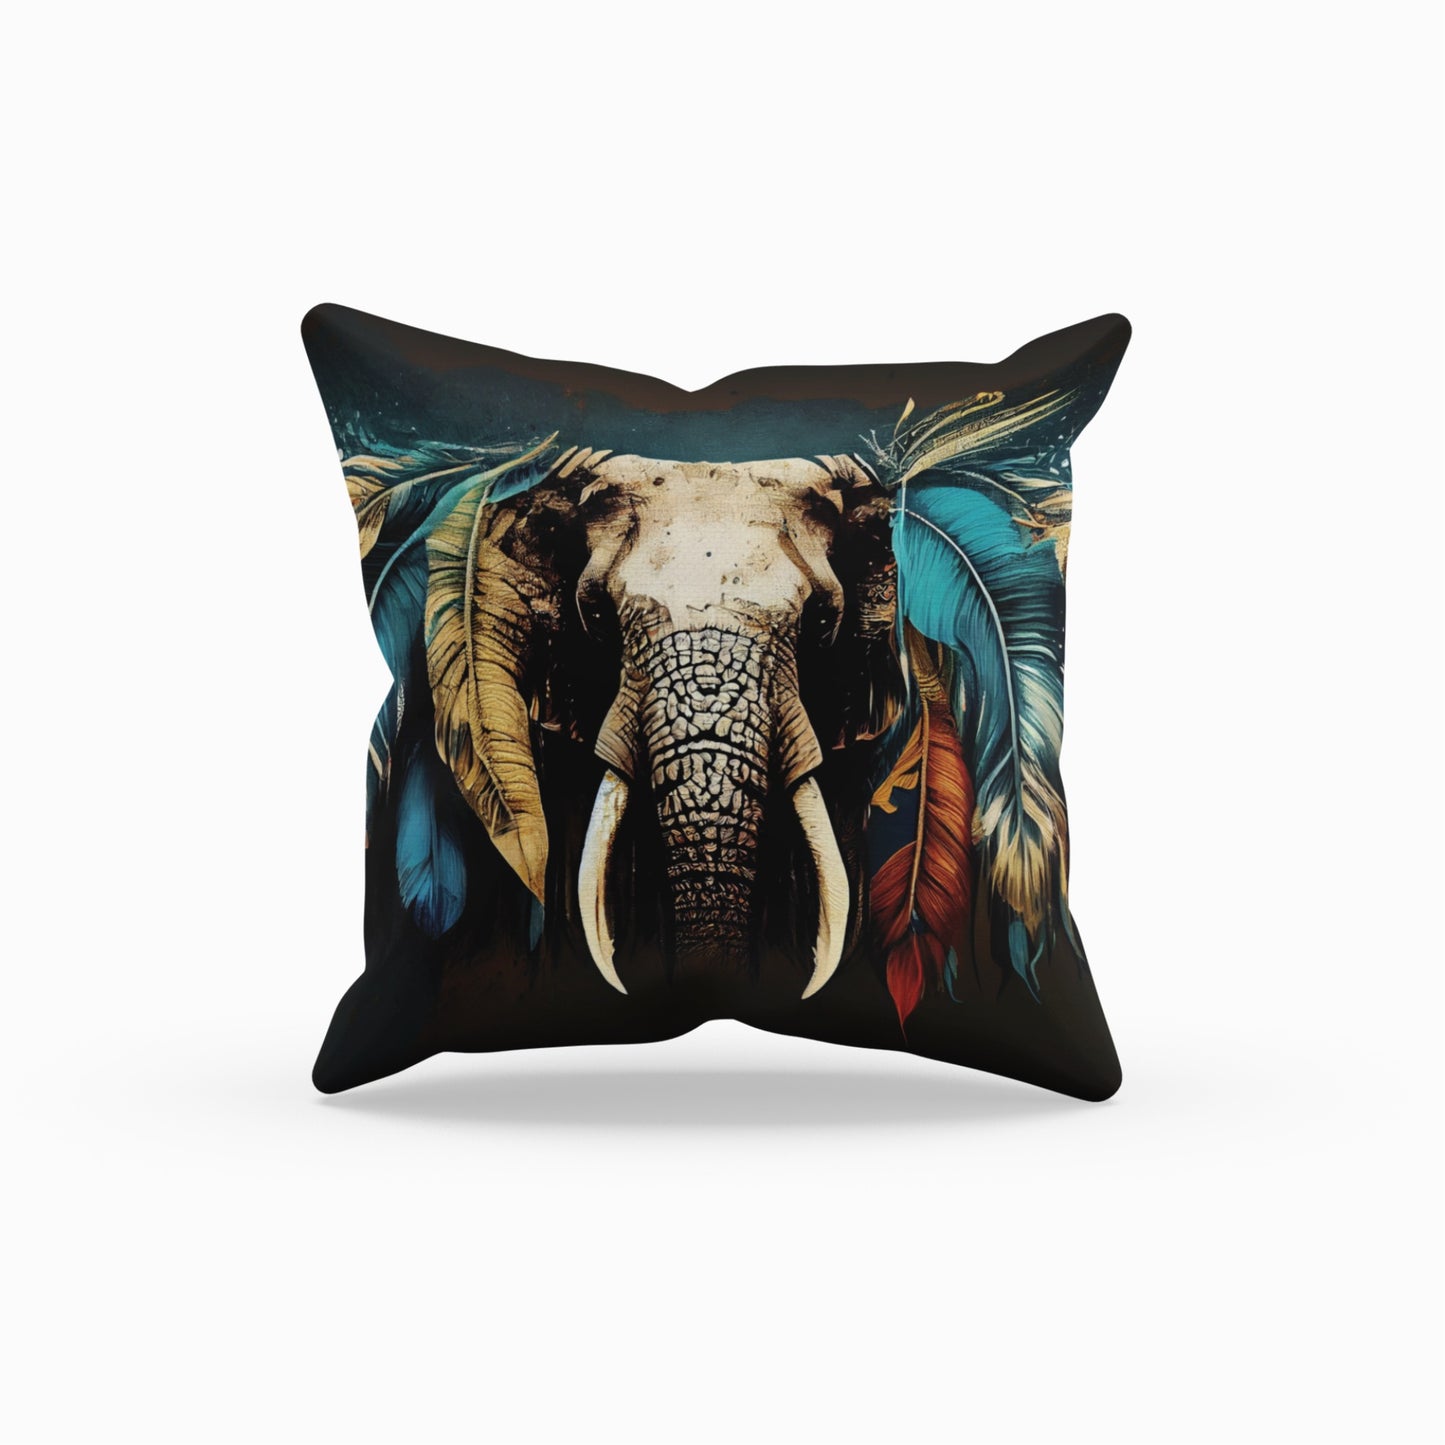 Stylish Boho Elephant Decorative Throw Pillow